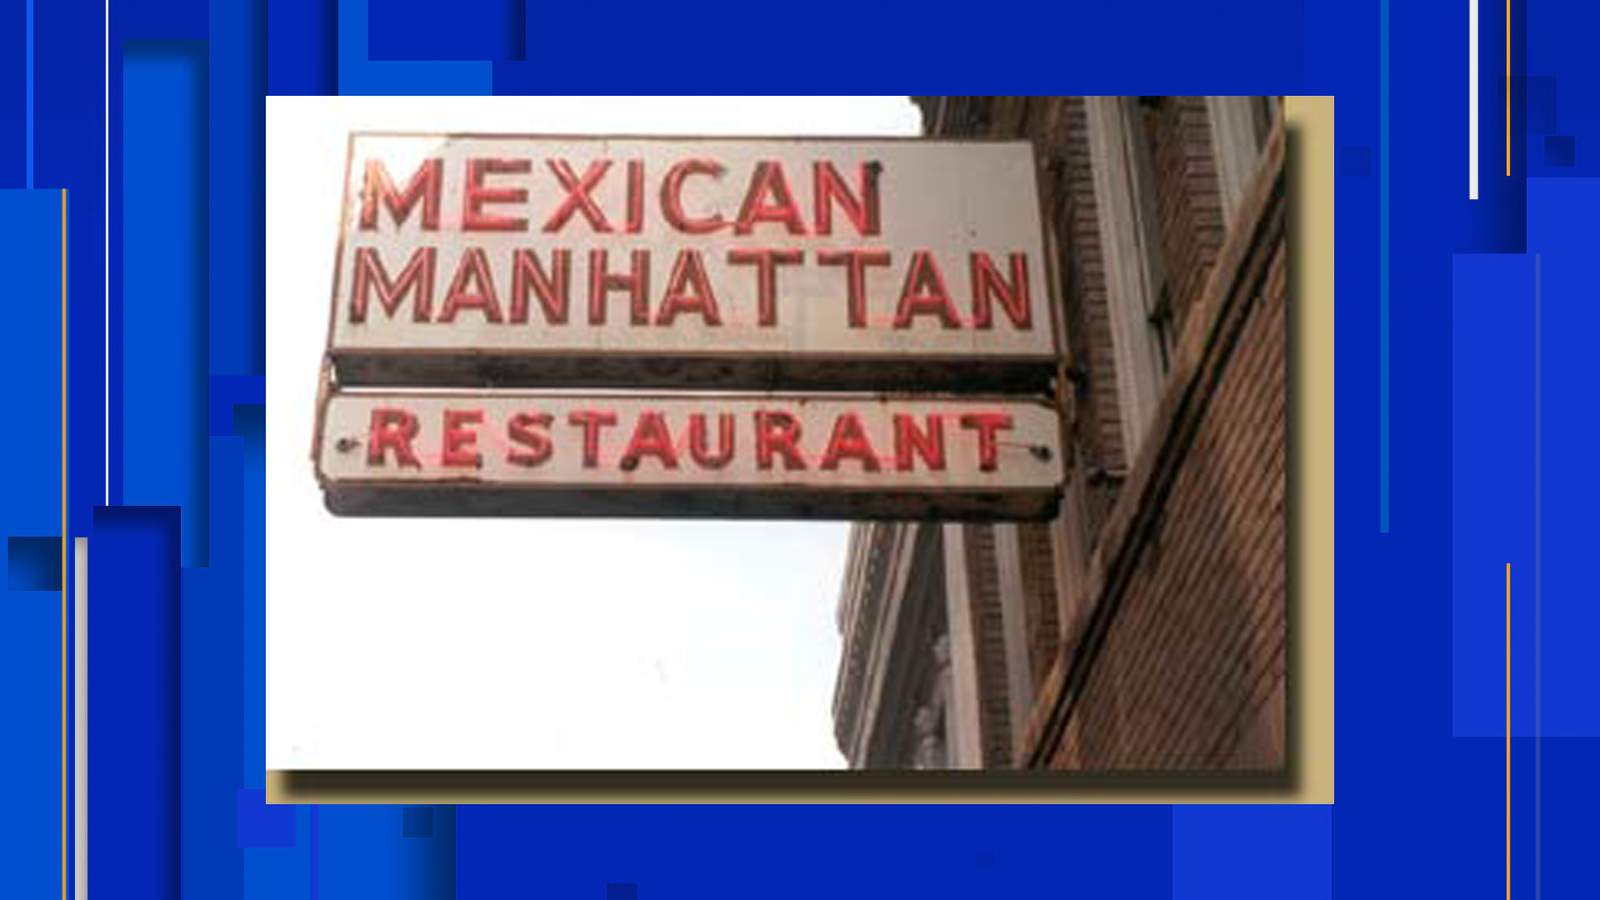 Mexican Manhattan Restaurant closes its doors for good